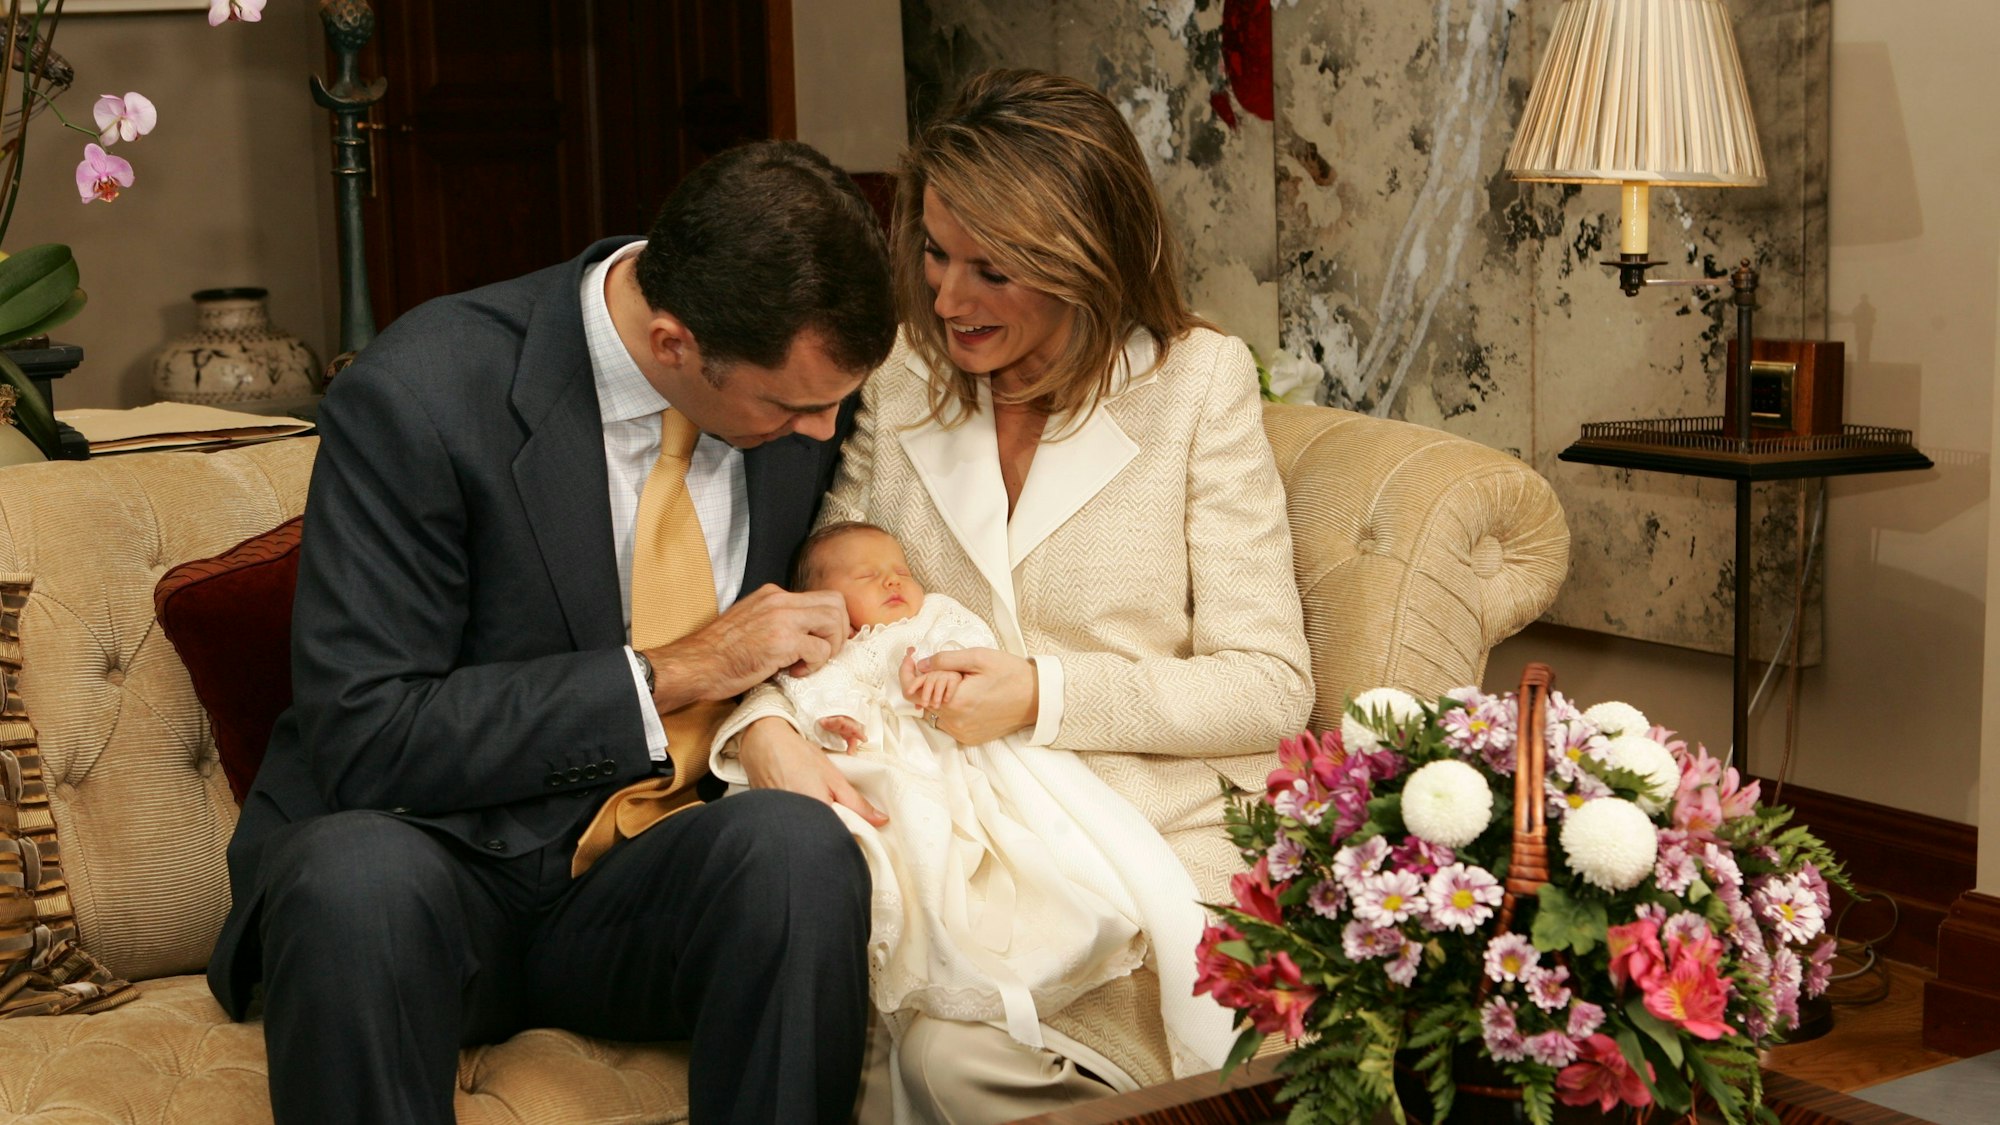 Der damalige Kronprinz Felipe und seine Frau, Prinzessin Letizia, stellen ihre neugeborene Tochter Prinzessin Leonor am 7. November 2005 in Madrid der Öffentlichkeit vor.